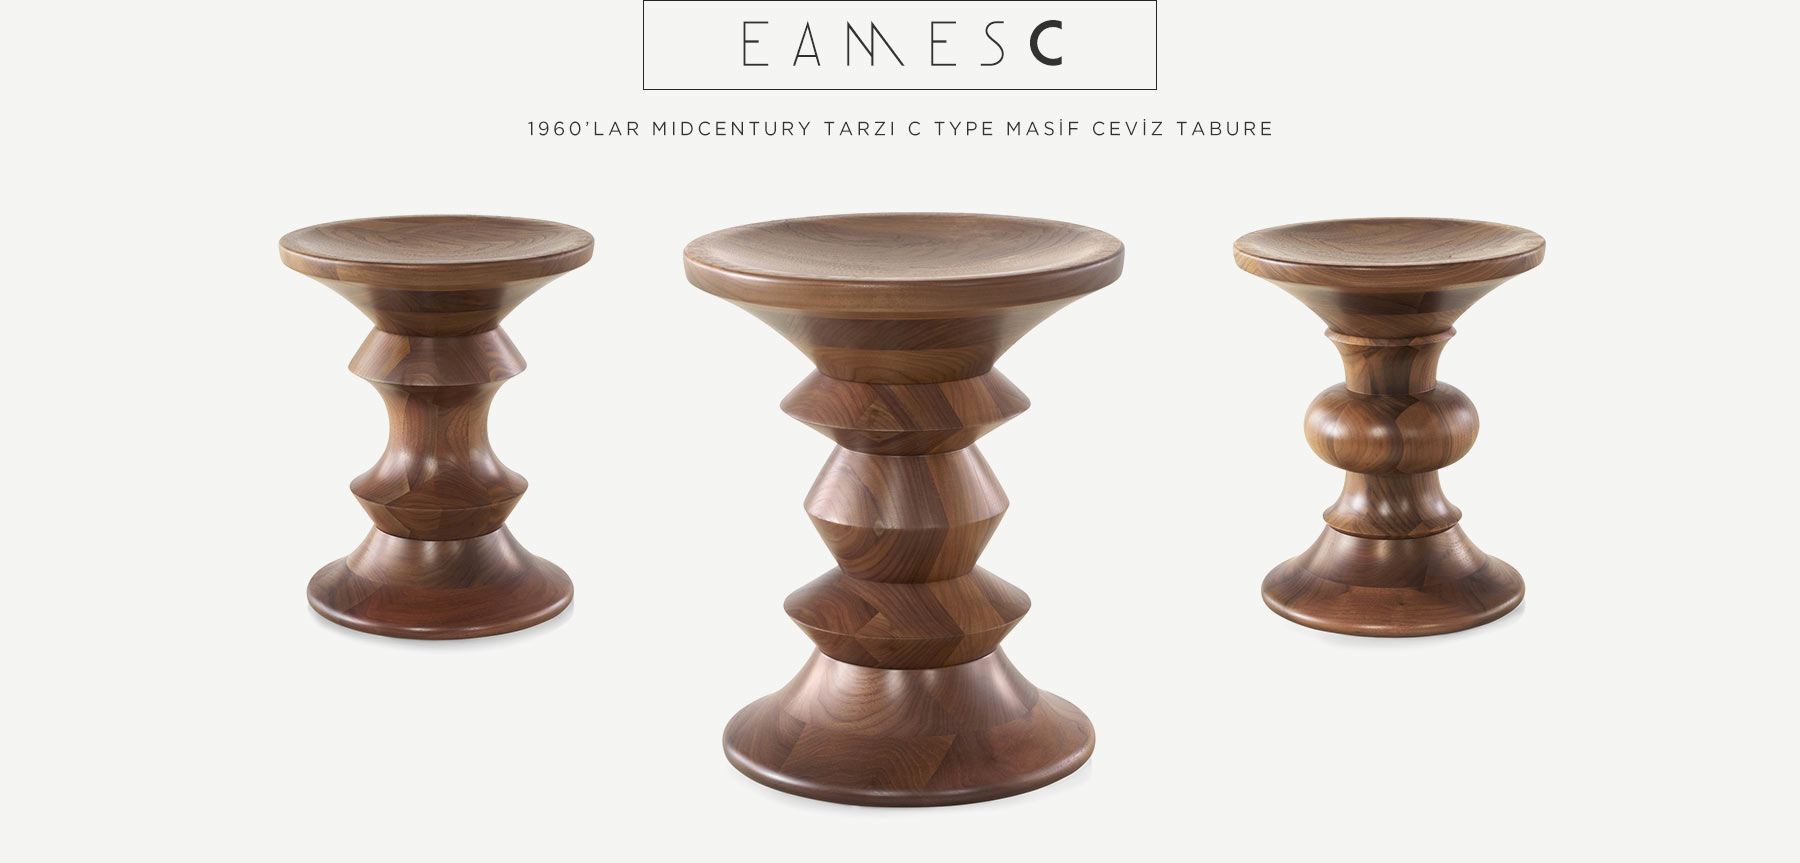 eames walnut stool c type'in resmi